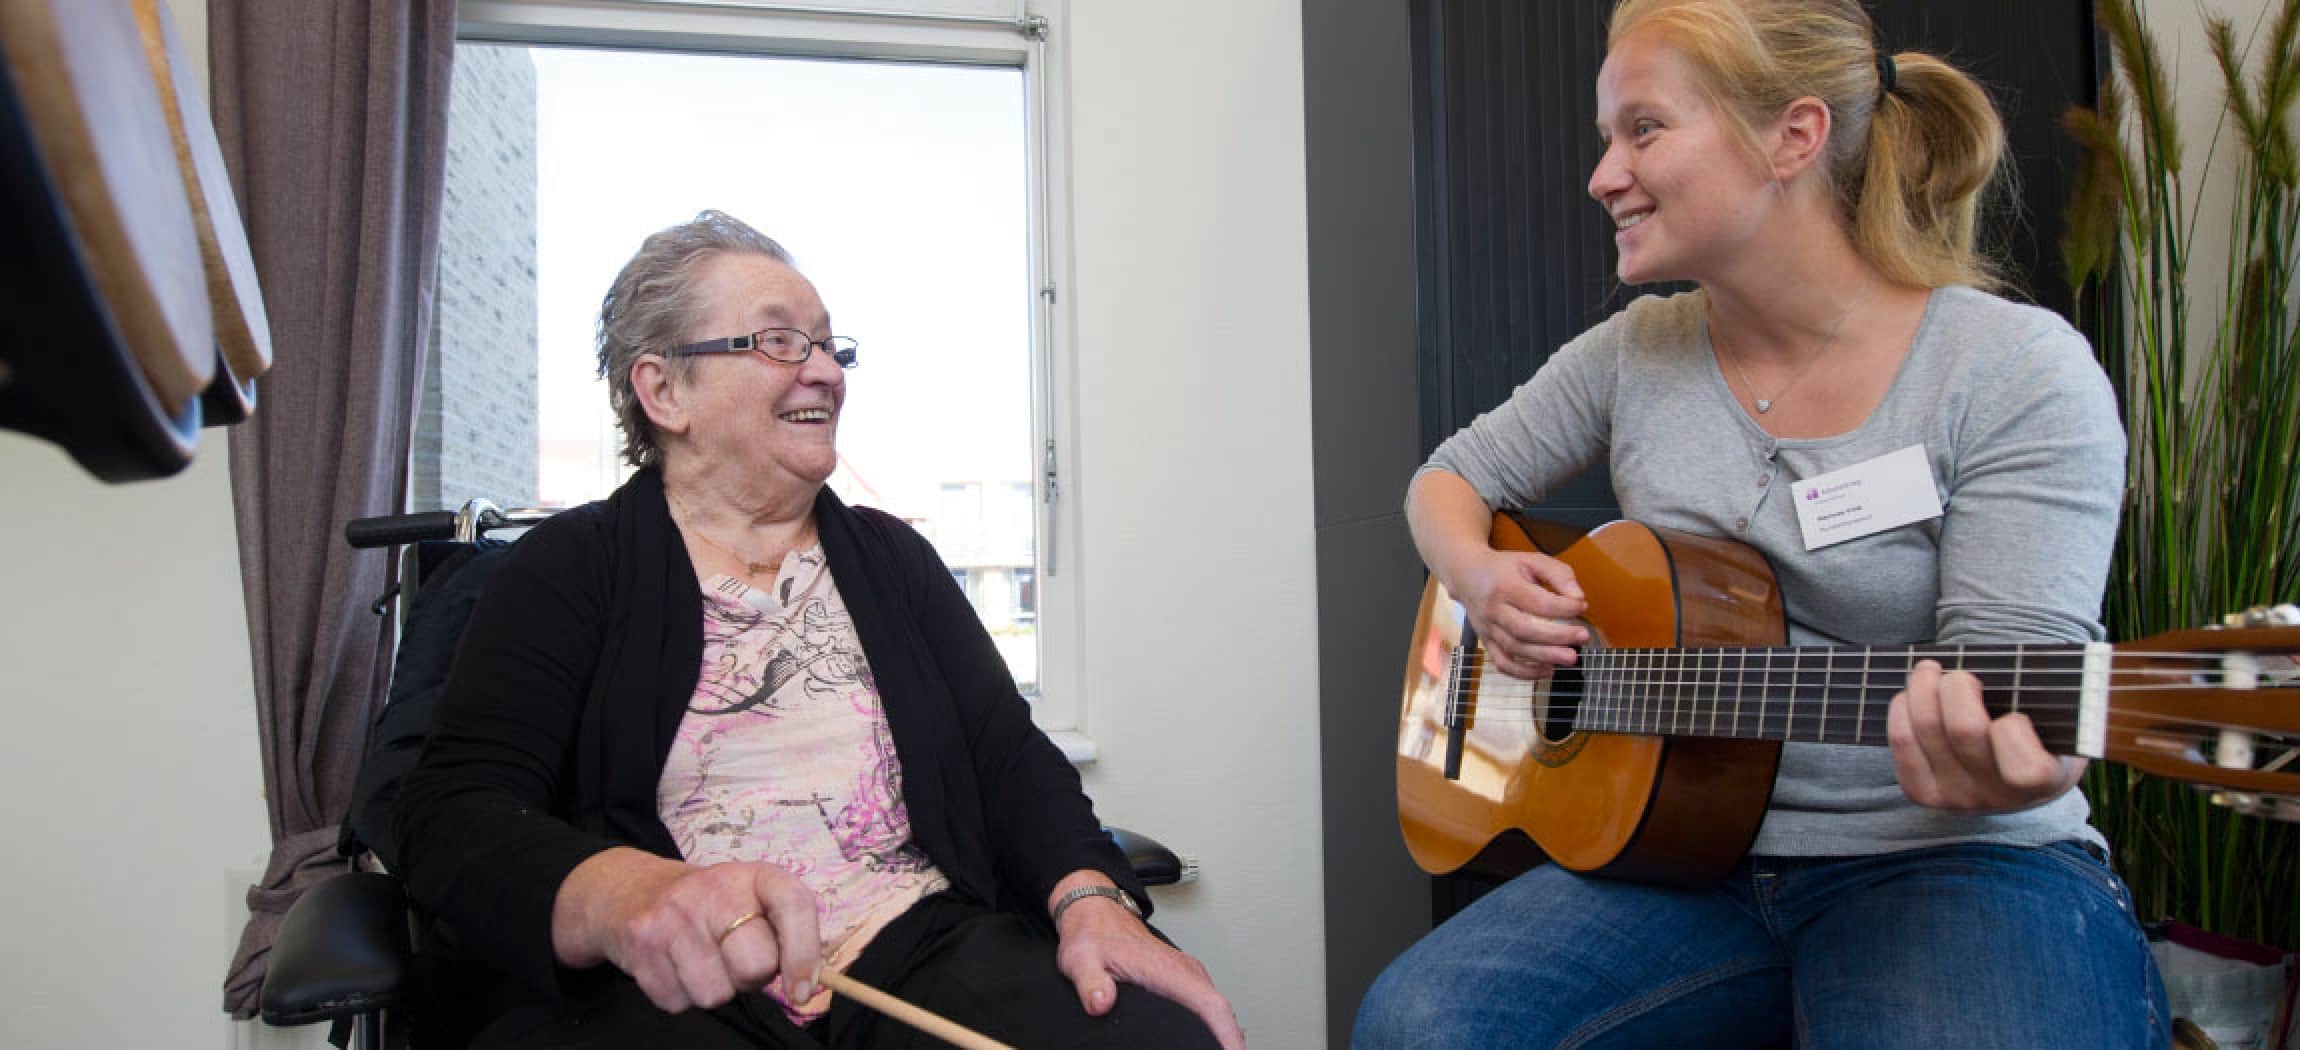 Muziektherapeut speelt op gitaar en zingt voor oudere vrouw in stoel